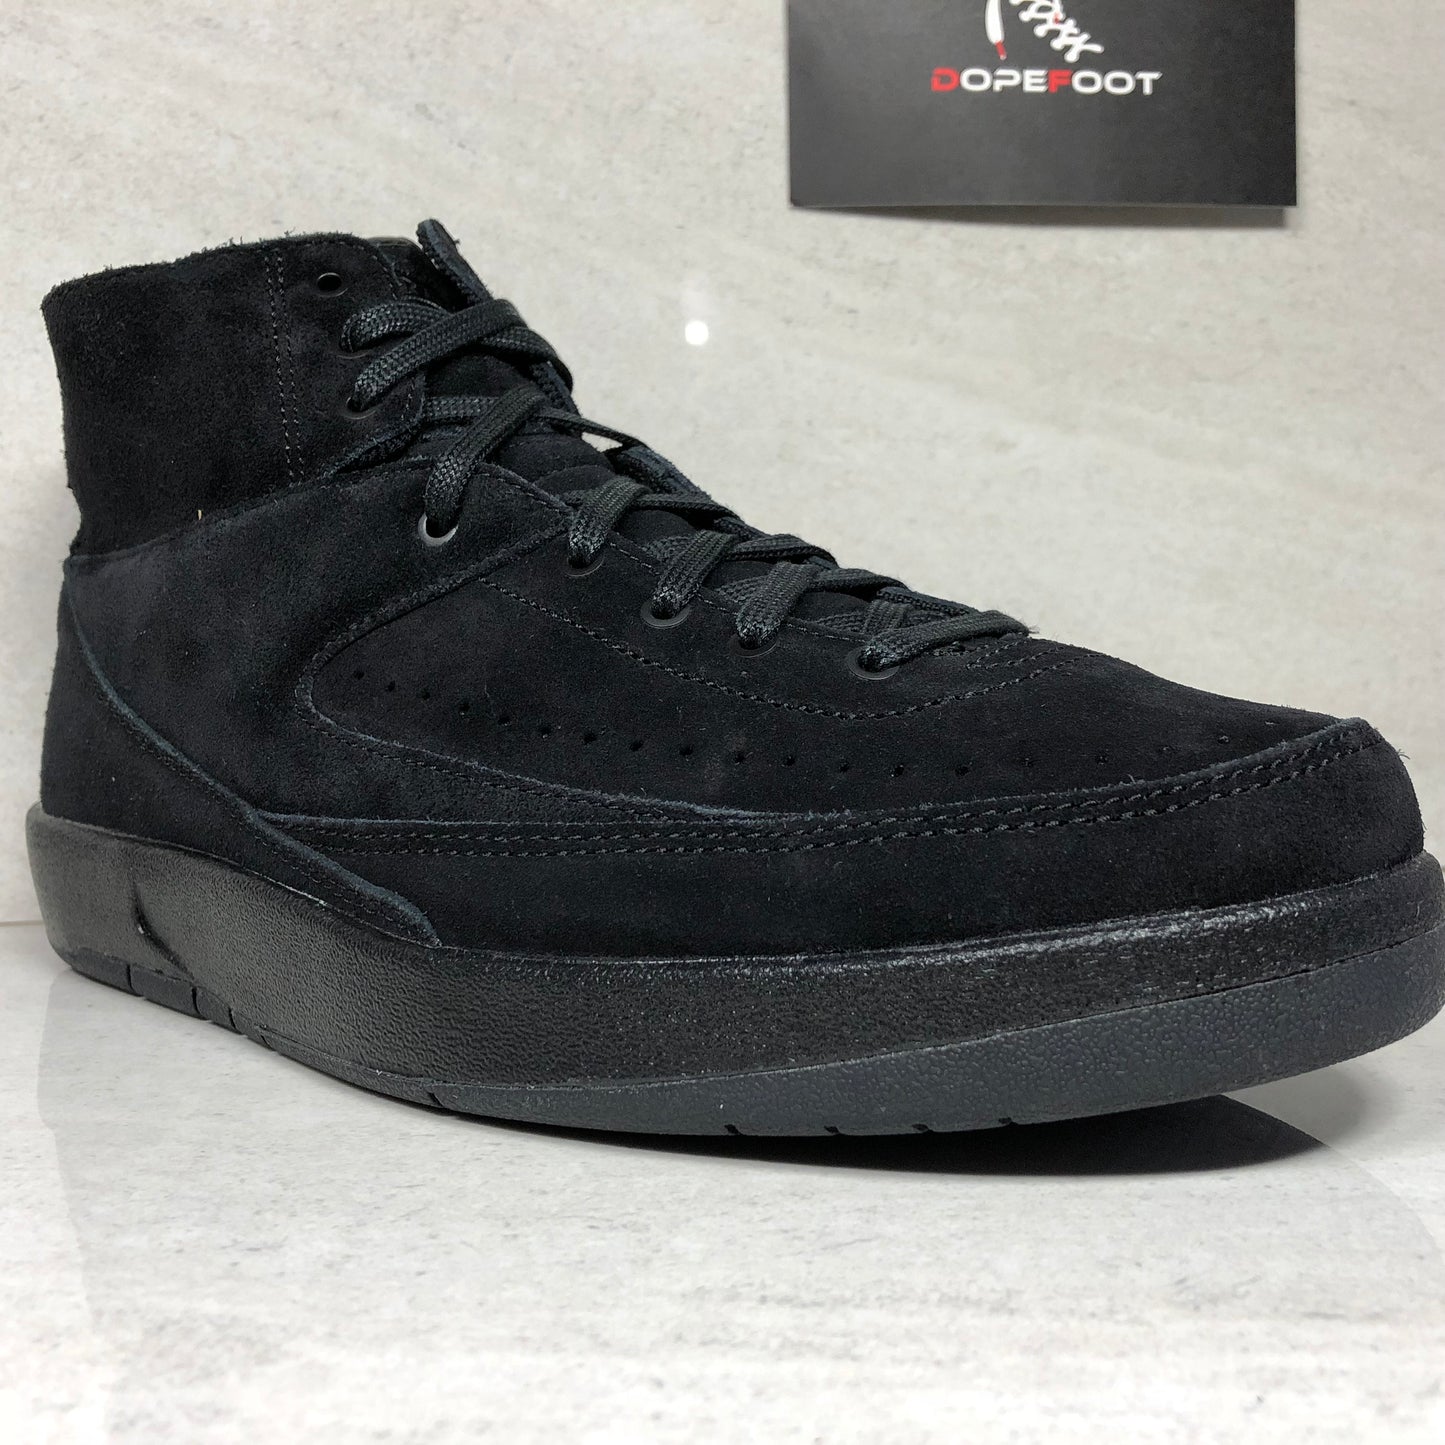 Air Jordan 2 Decon Black Suede - 897521 010 - Size 8/Size 8.5/Size 10.5